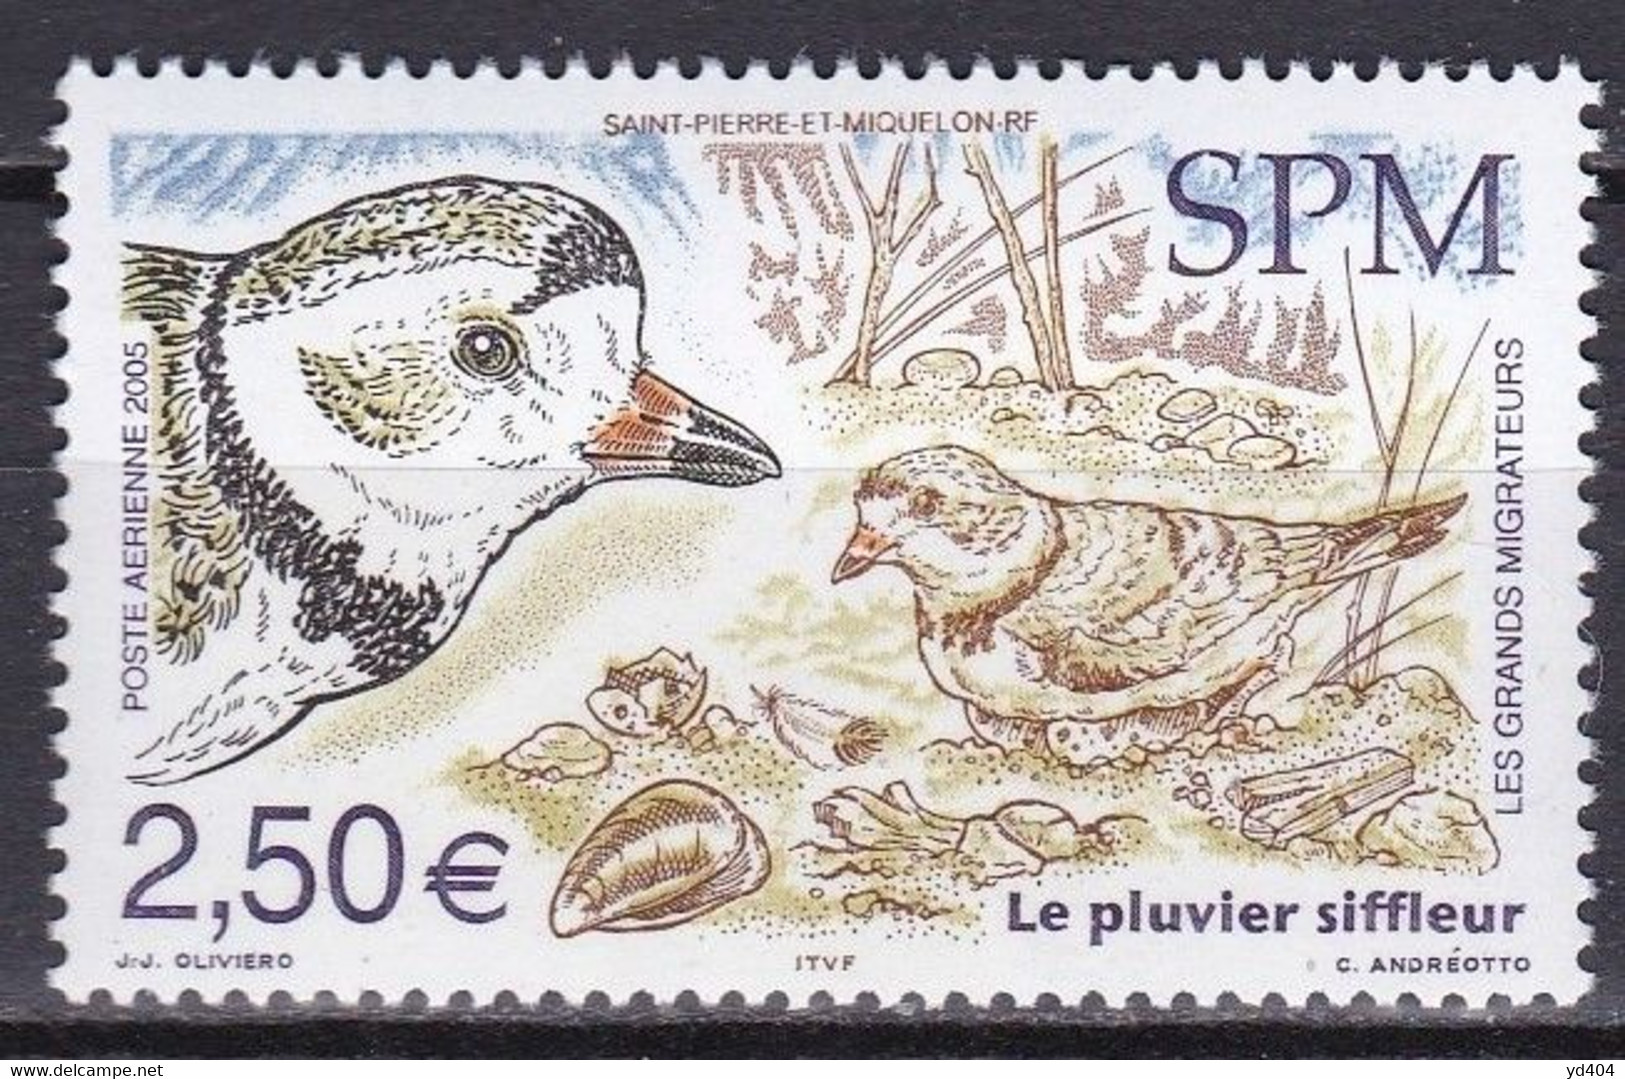 PM-428 – ST PIERRE & MIQUELON – AIRMAIL - 2005 – MIGRATORY BIRDS – SG # 1008 MNH 10,50 € - Nuevos